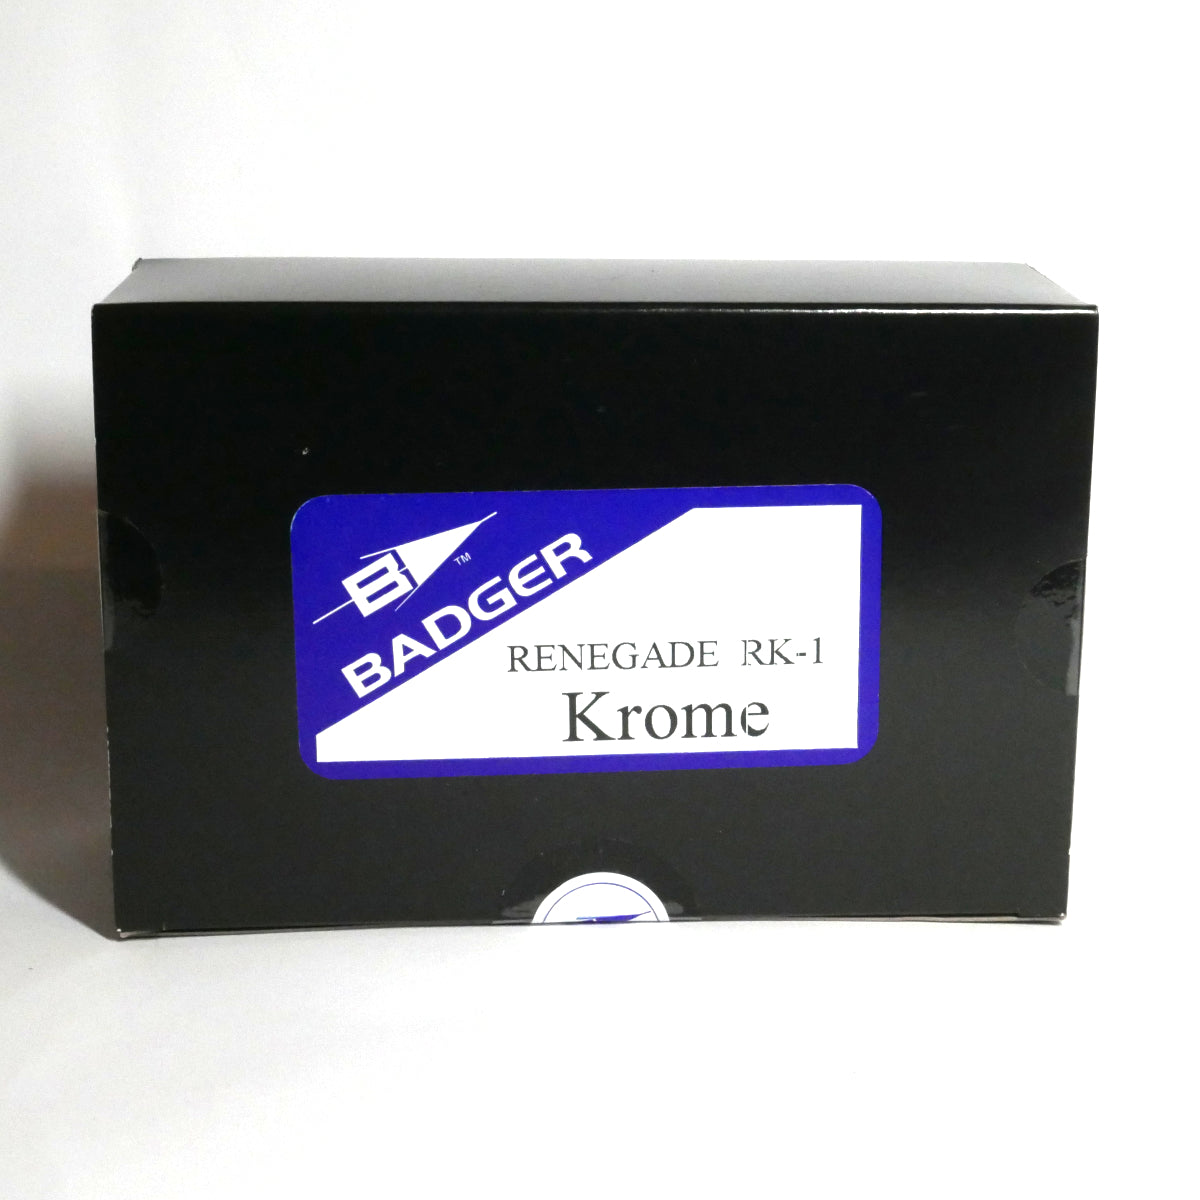 Badger: Renegade Krome RK-1